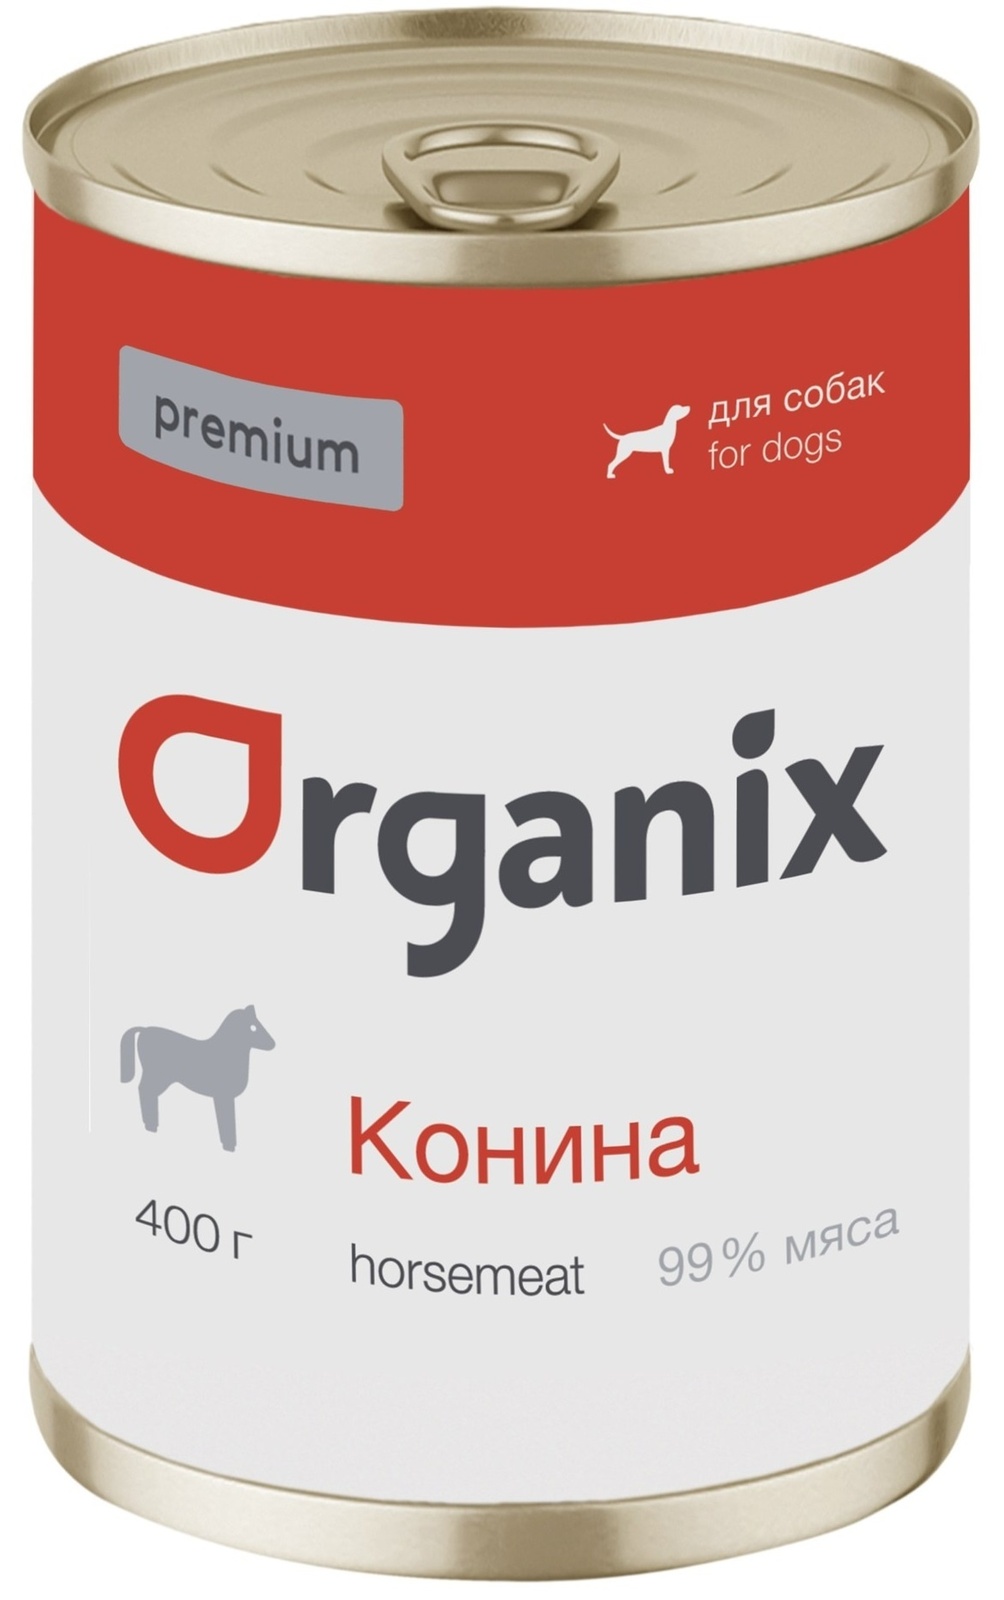 Organix консервы Organix монобелковые премиум консервы для собак, с кониной (100 г)